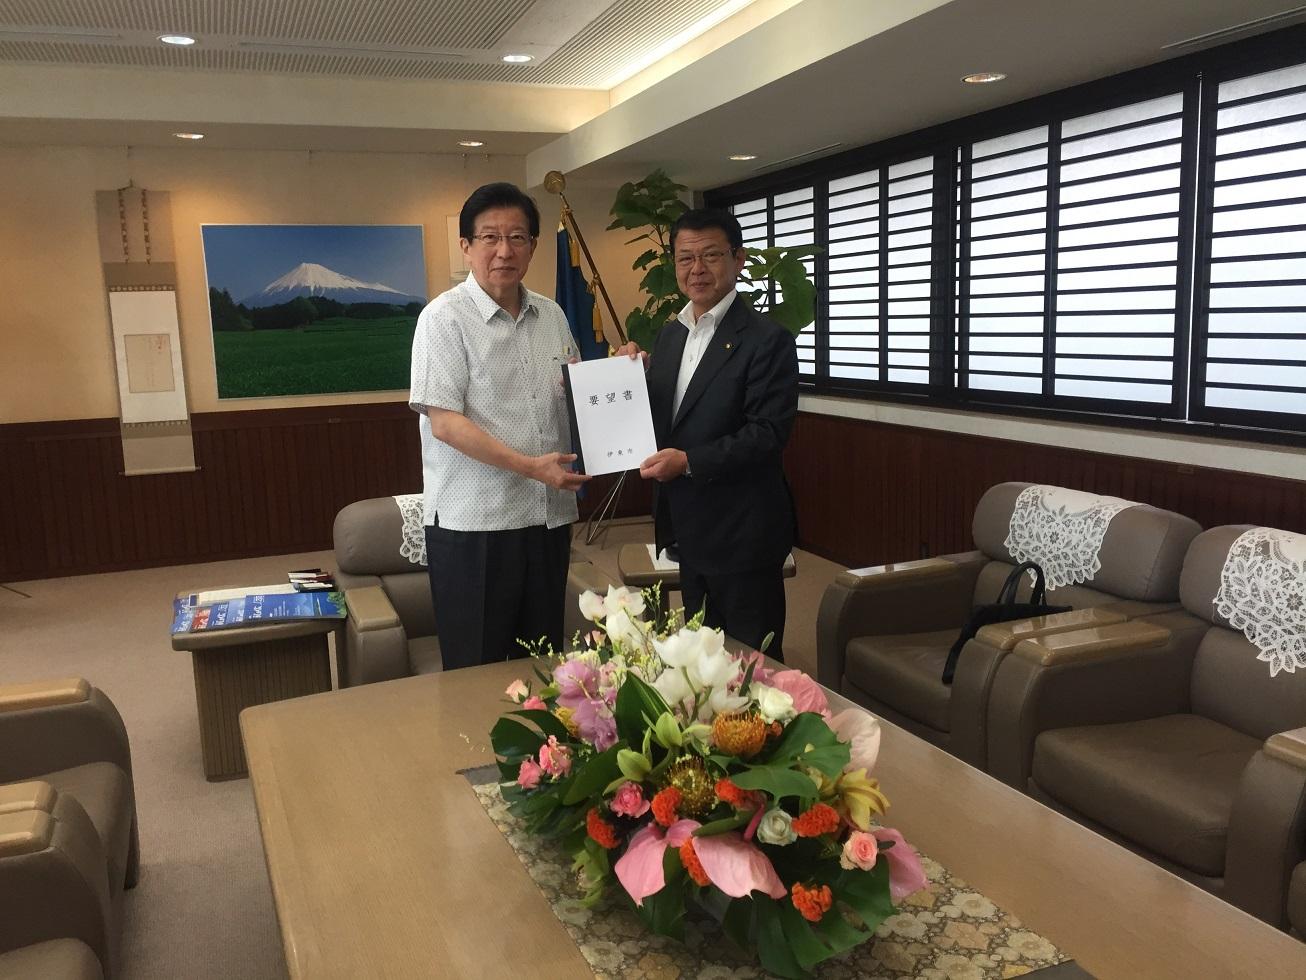 2018年9月4日 伊東市からの要望書を手渡しする伊東市長と受け取る川勝平太知事の写真